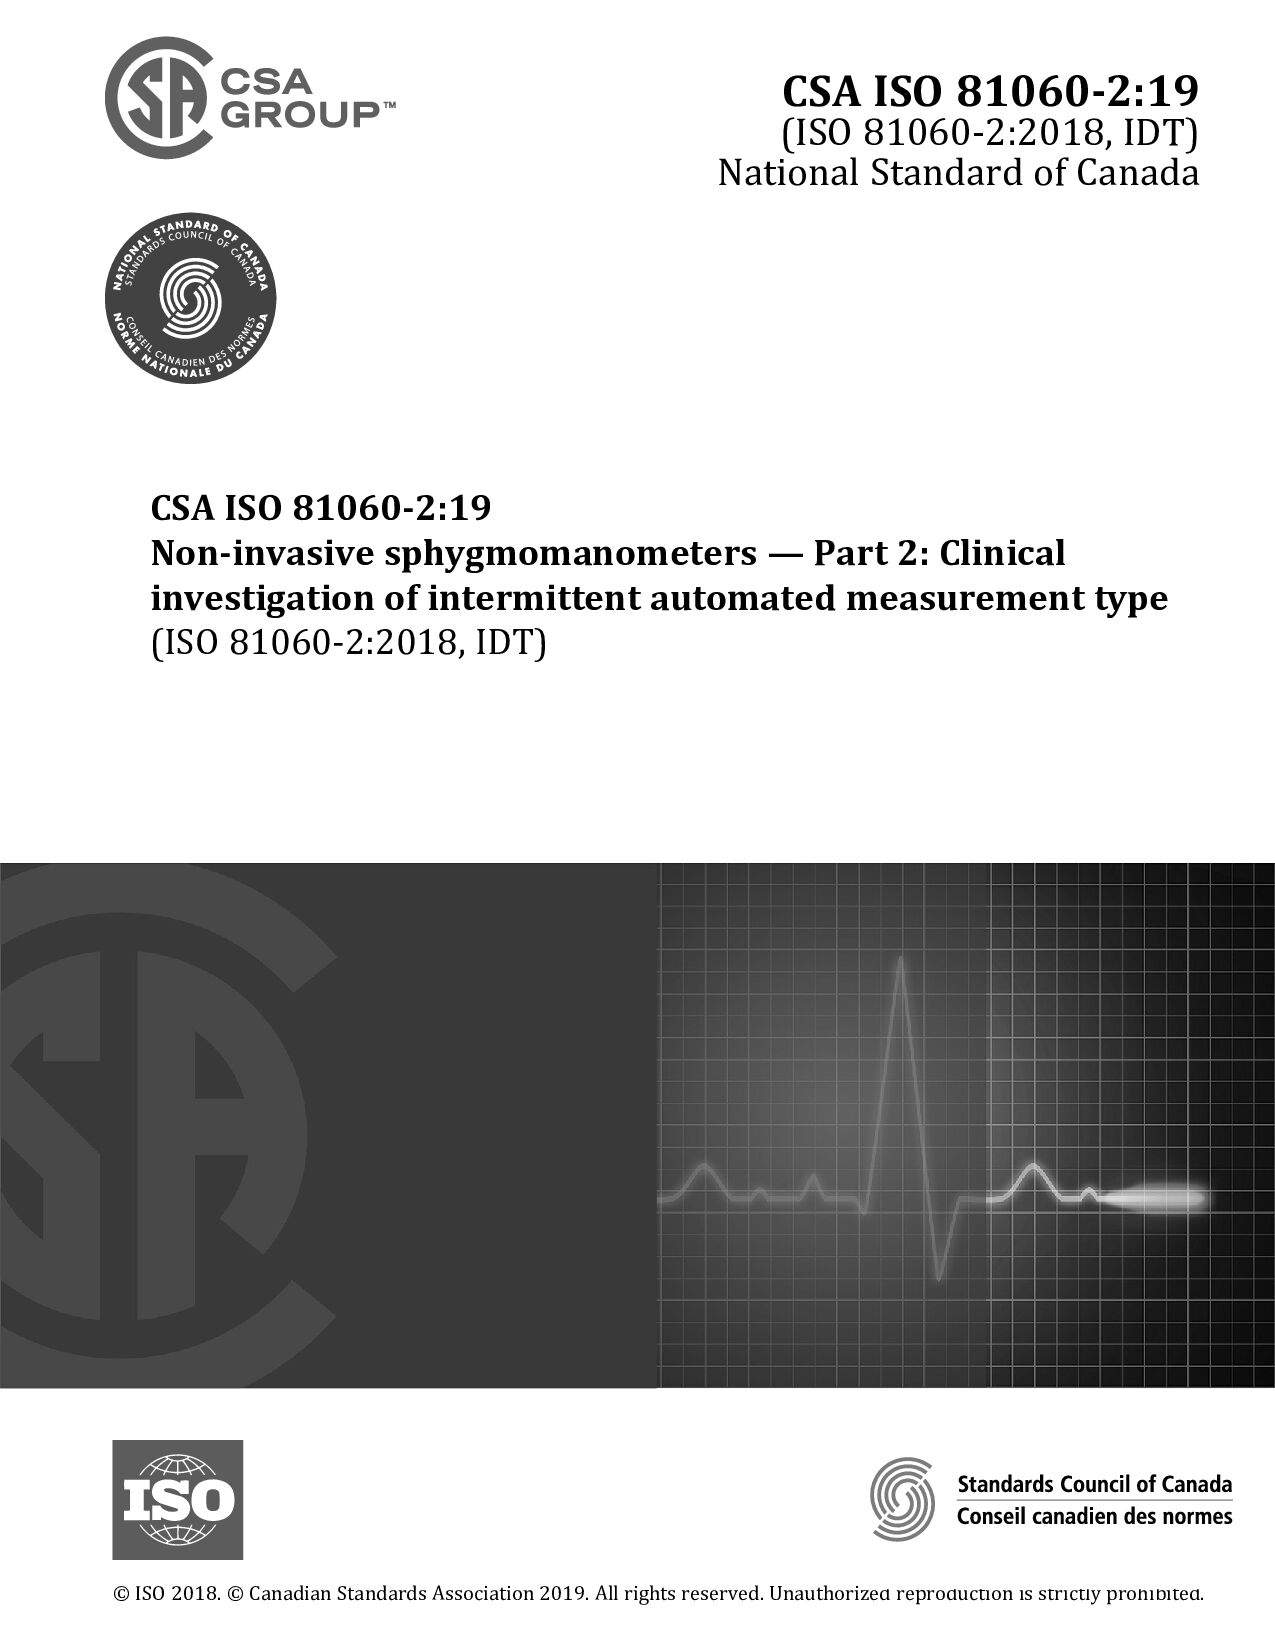 CSA ISO 81060-2:2019封面图